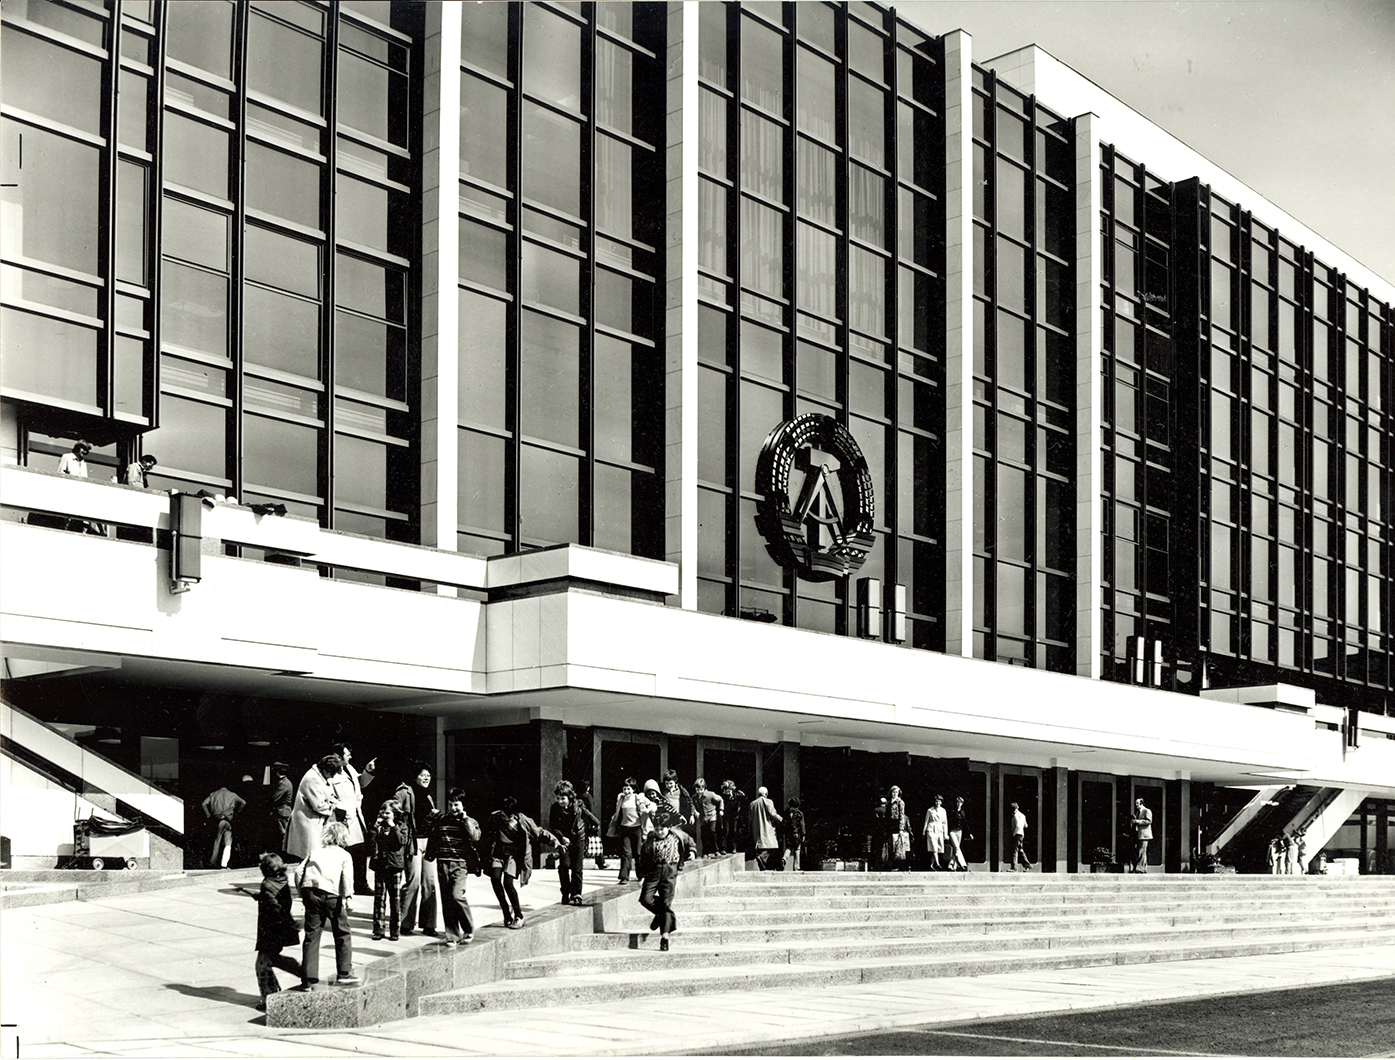 Der Palast der Republik im Jahr der Eröffnung 1976 von außen an der Haupteingangsseite mit dem Staatswappen der DDR (Aufnahme: Baum; Leibniz-Institut für Raumbezogene Sozialforschung, Wissenschaftliche Sammlungen, Bildarchiv D1_1_1_21-007)